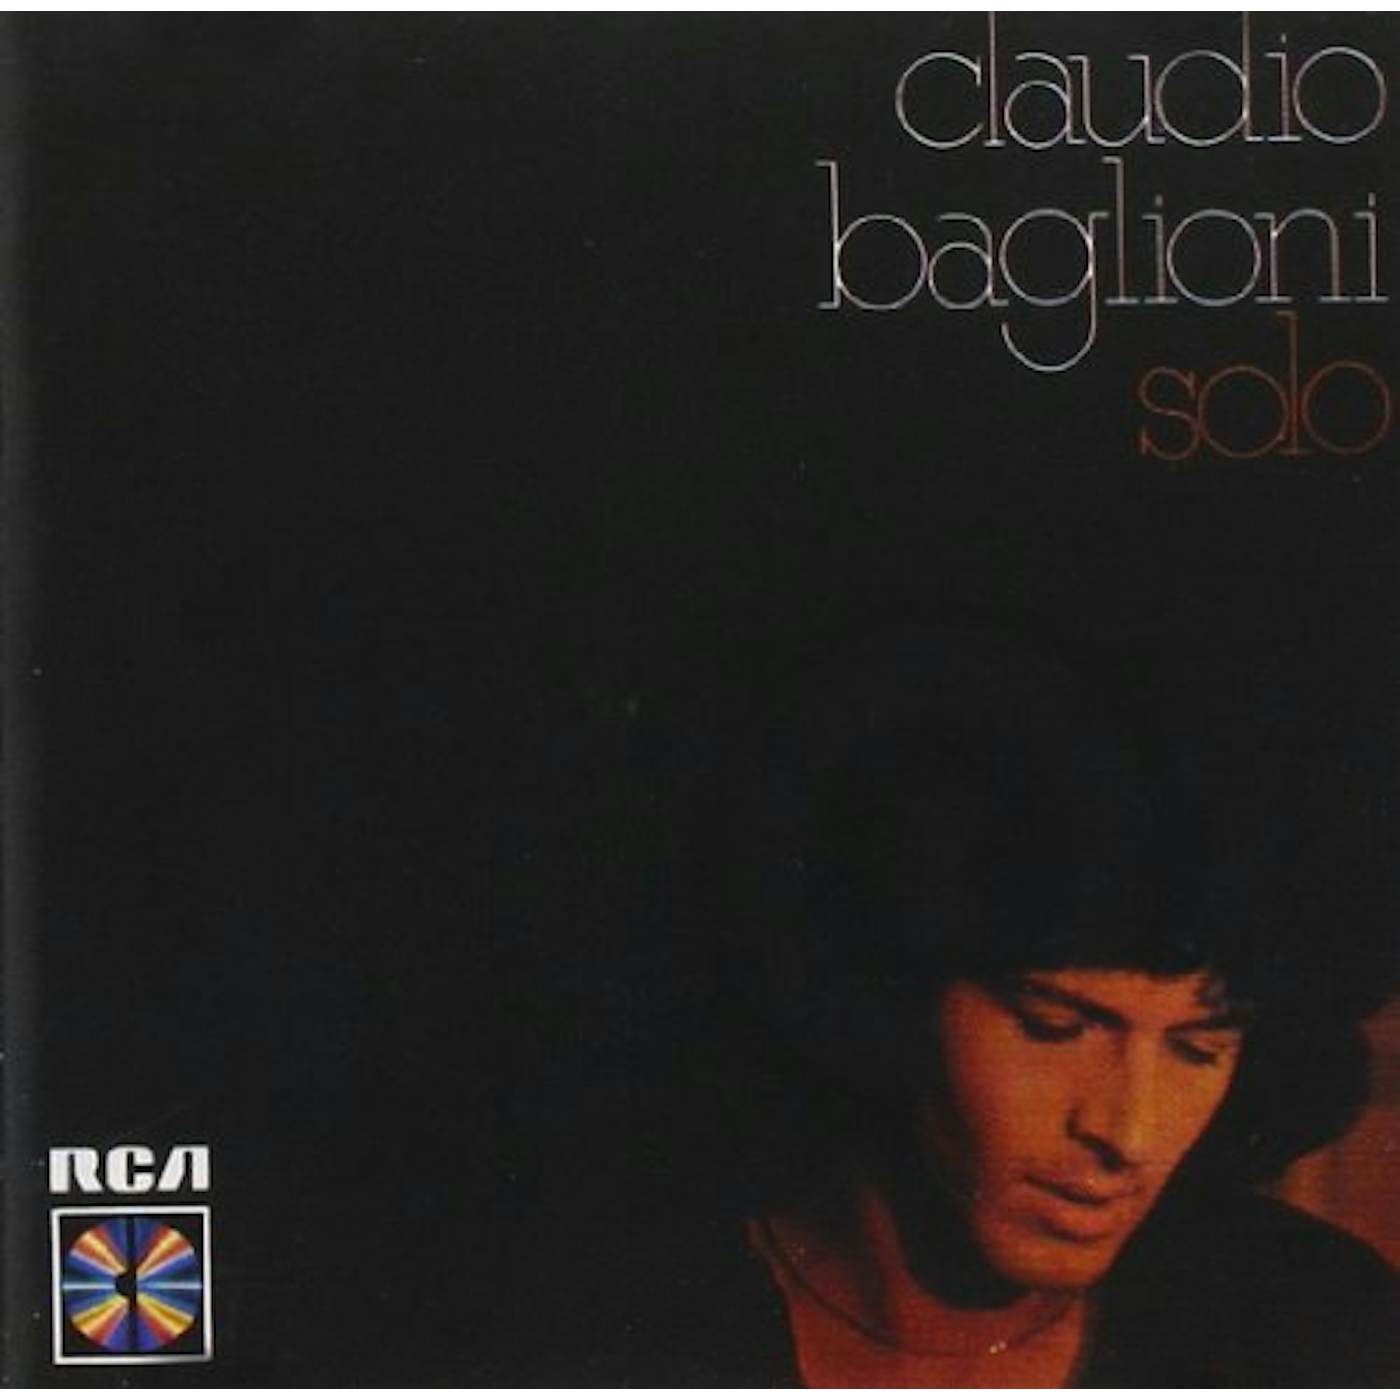 Claudio Baglioni SOLO CD